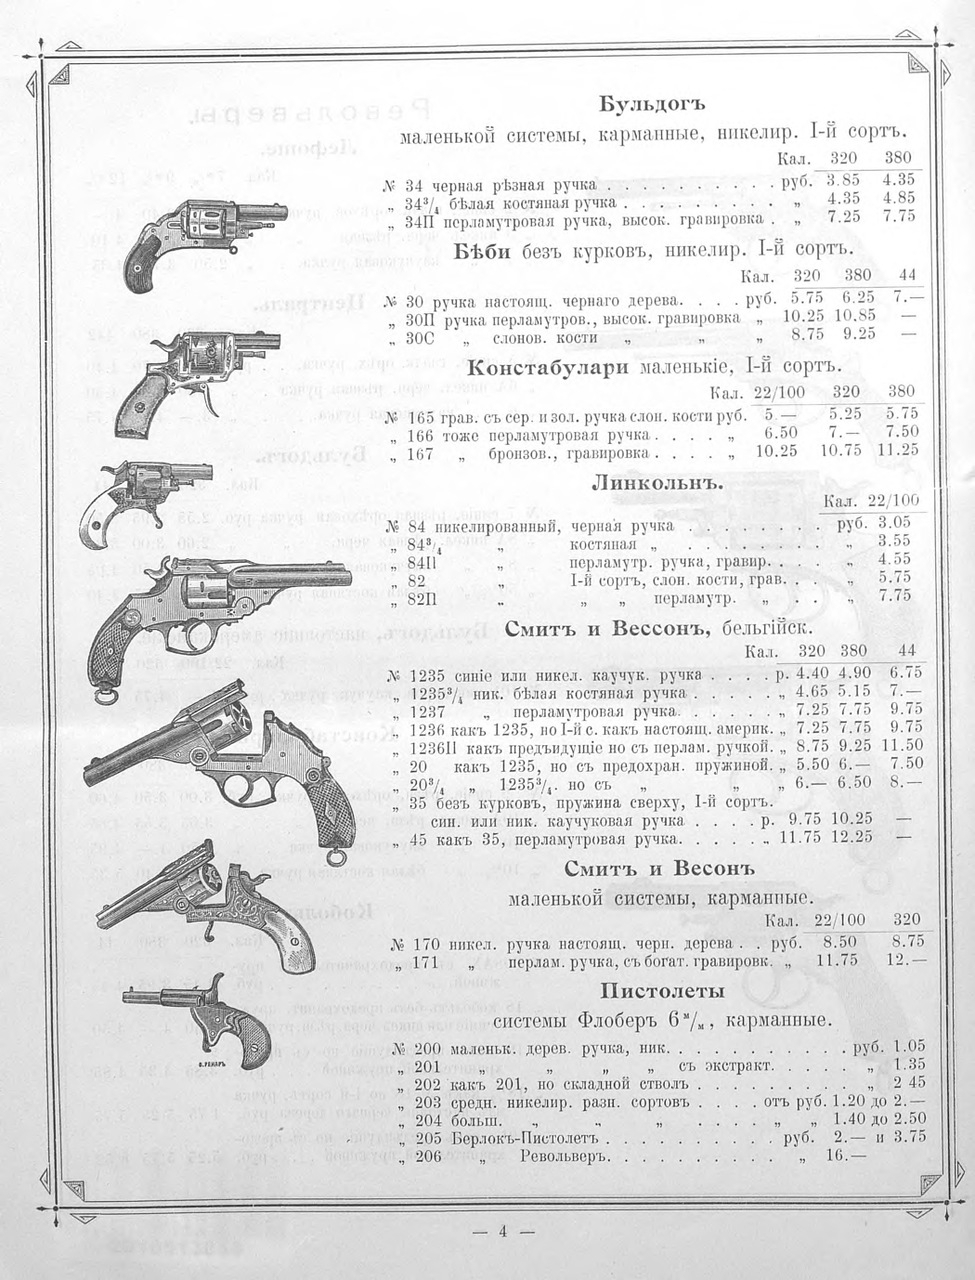 Прейскурант на оружие 1899г